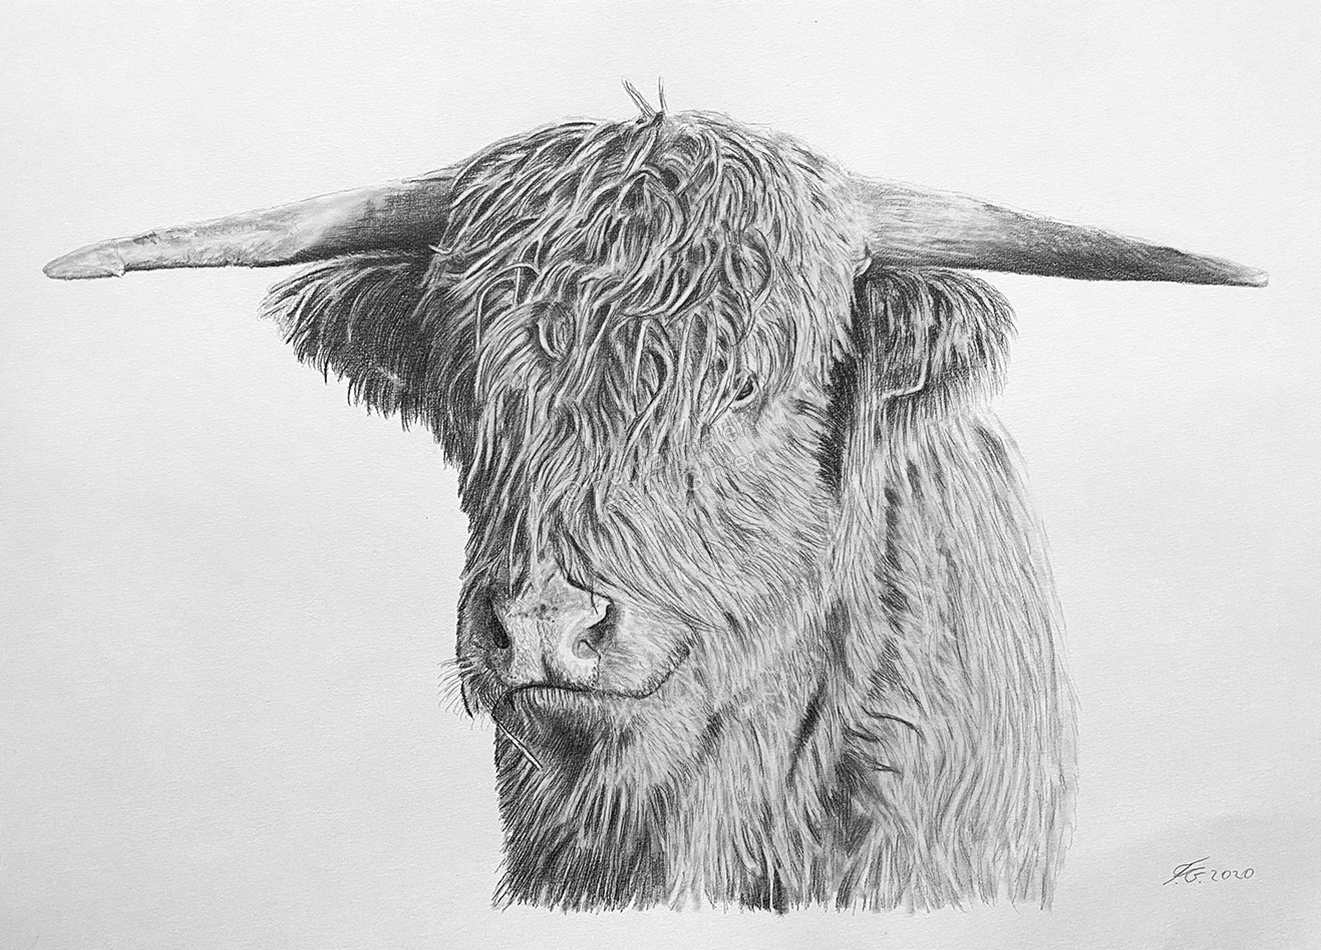 Ochsenportraits fotorealistisch gezeichnet – Bleistiftzeichnung eines Ochsen